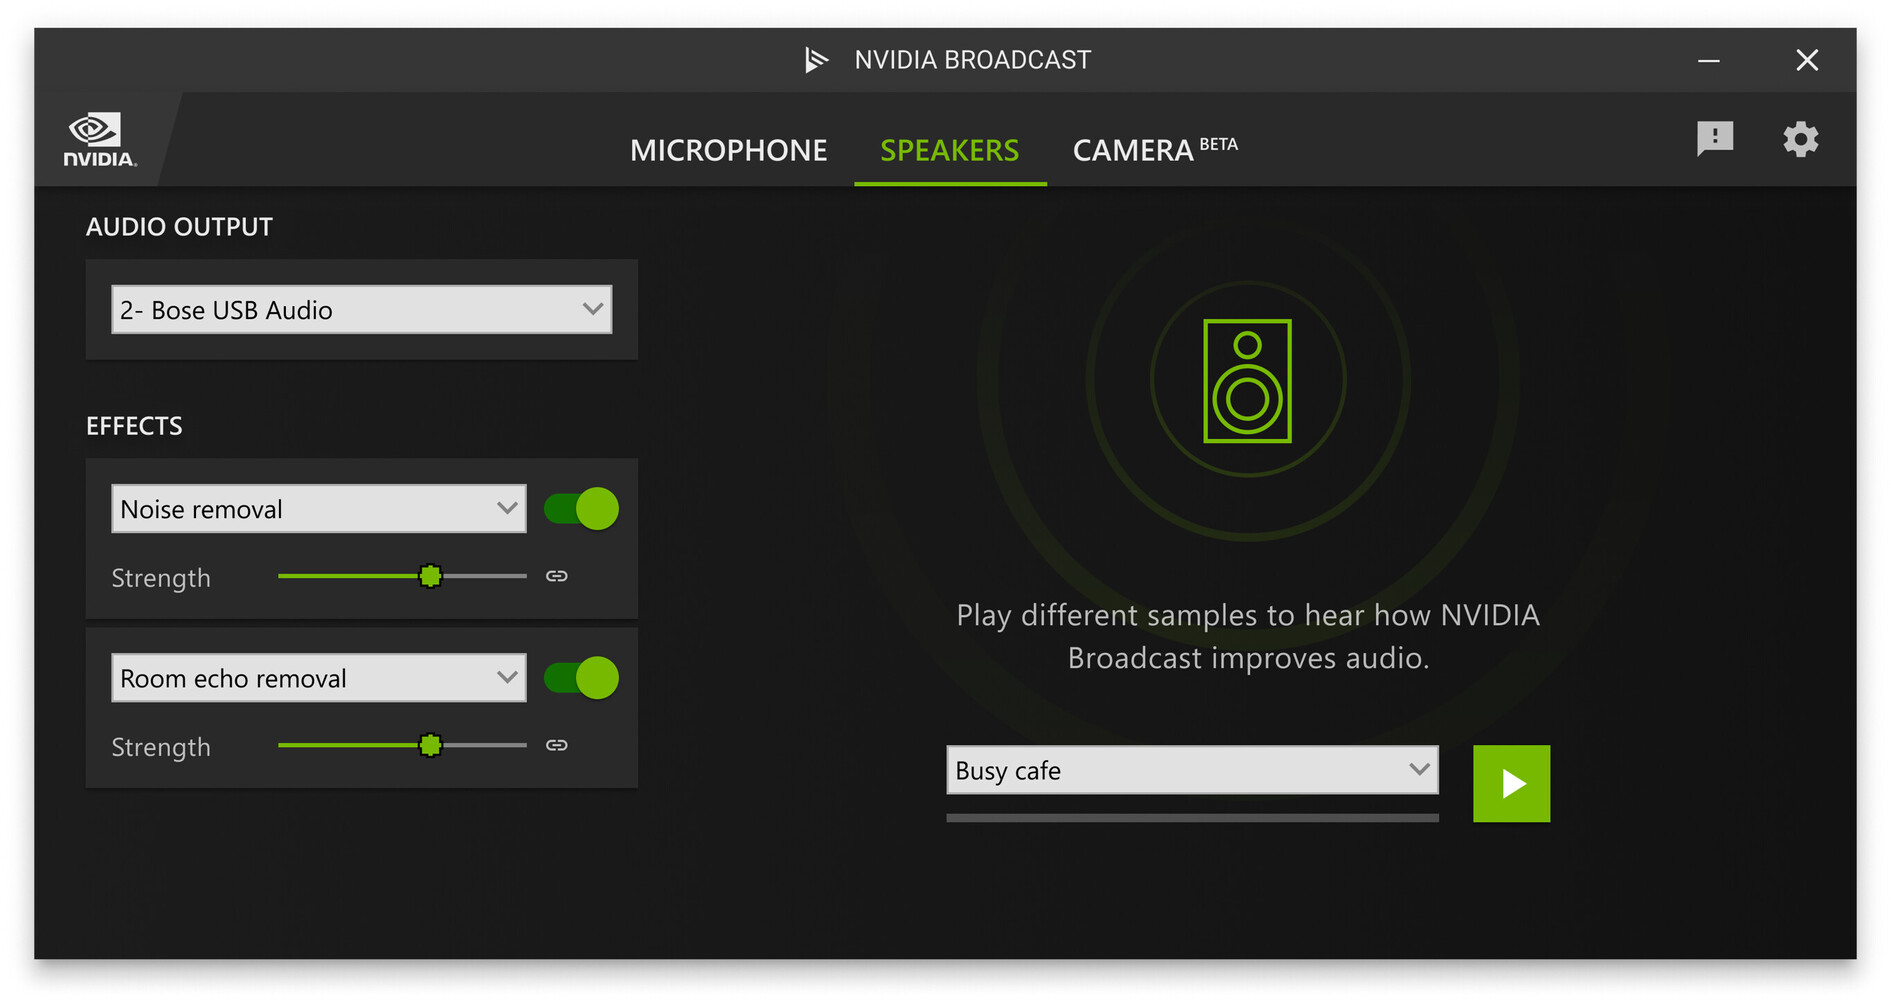 Đừng bỏ lỡ ứng dụng mới từ NVIDIA Broadcast App 1.3, giải pháp hoàn hảo để loại bỏ tiếng ồn nền và nhiều tính năng tiện ích khác. Đảm bảo truyền tải video và phát sóng trực tiếp chất lượng cao nhất.